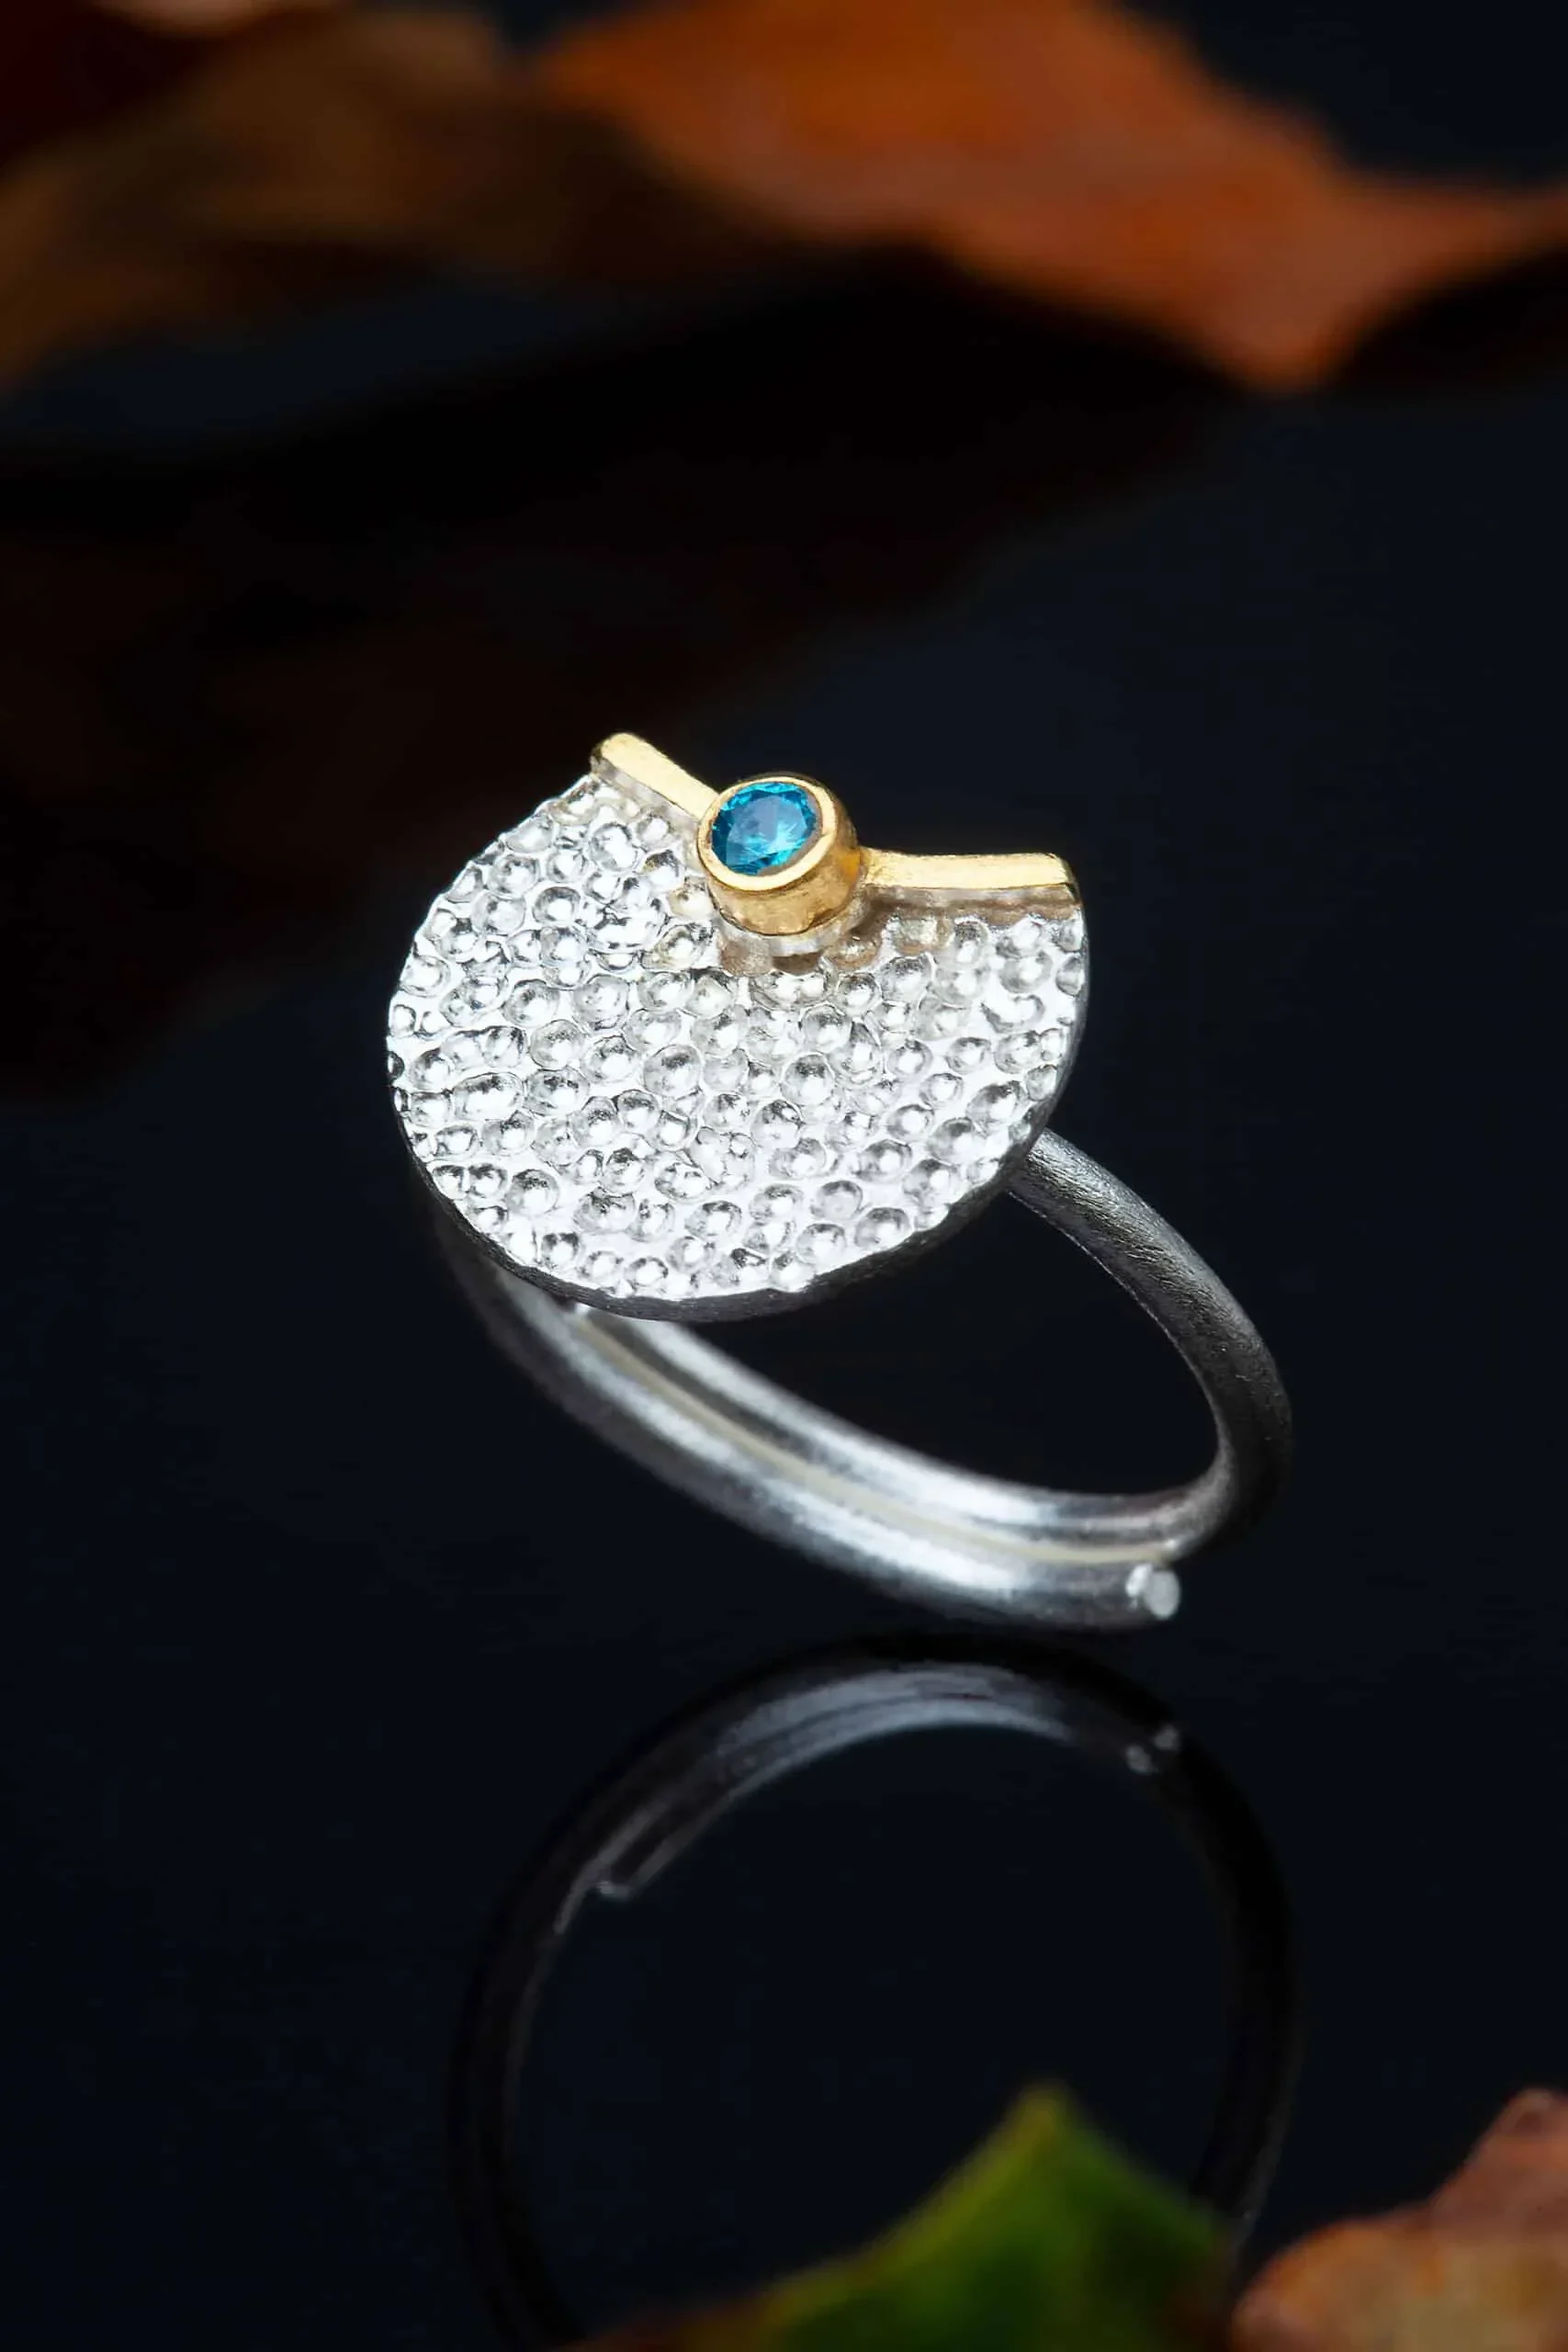 Χειροποίητα κοσμήματα | Κυκλικό ασημένιο δαχτυλίδι με επιπλατίνωση και επίχρυσες λεπτομέρειες, συδιασμένο με ζιργκόν gallery 1